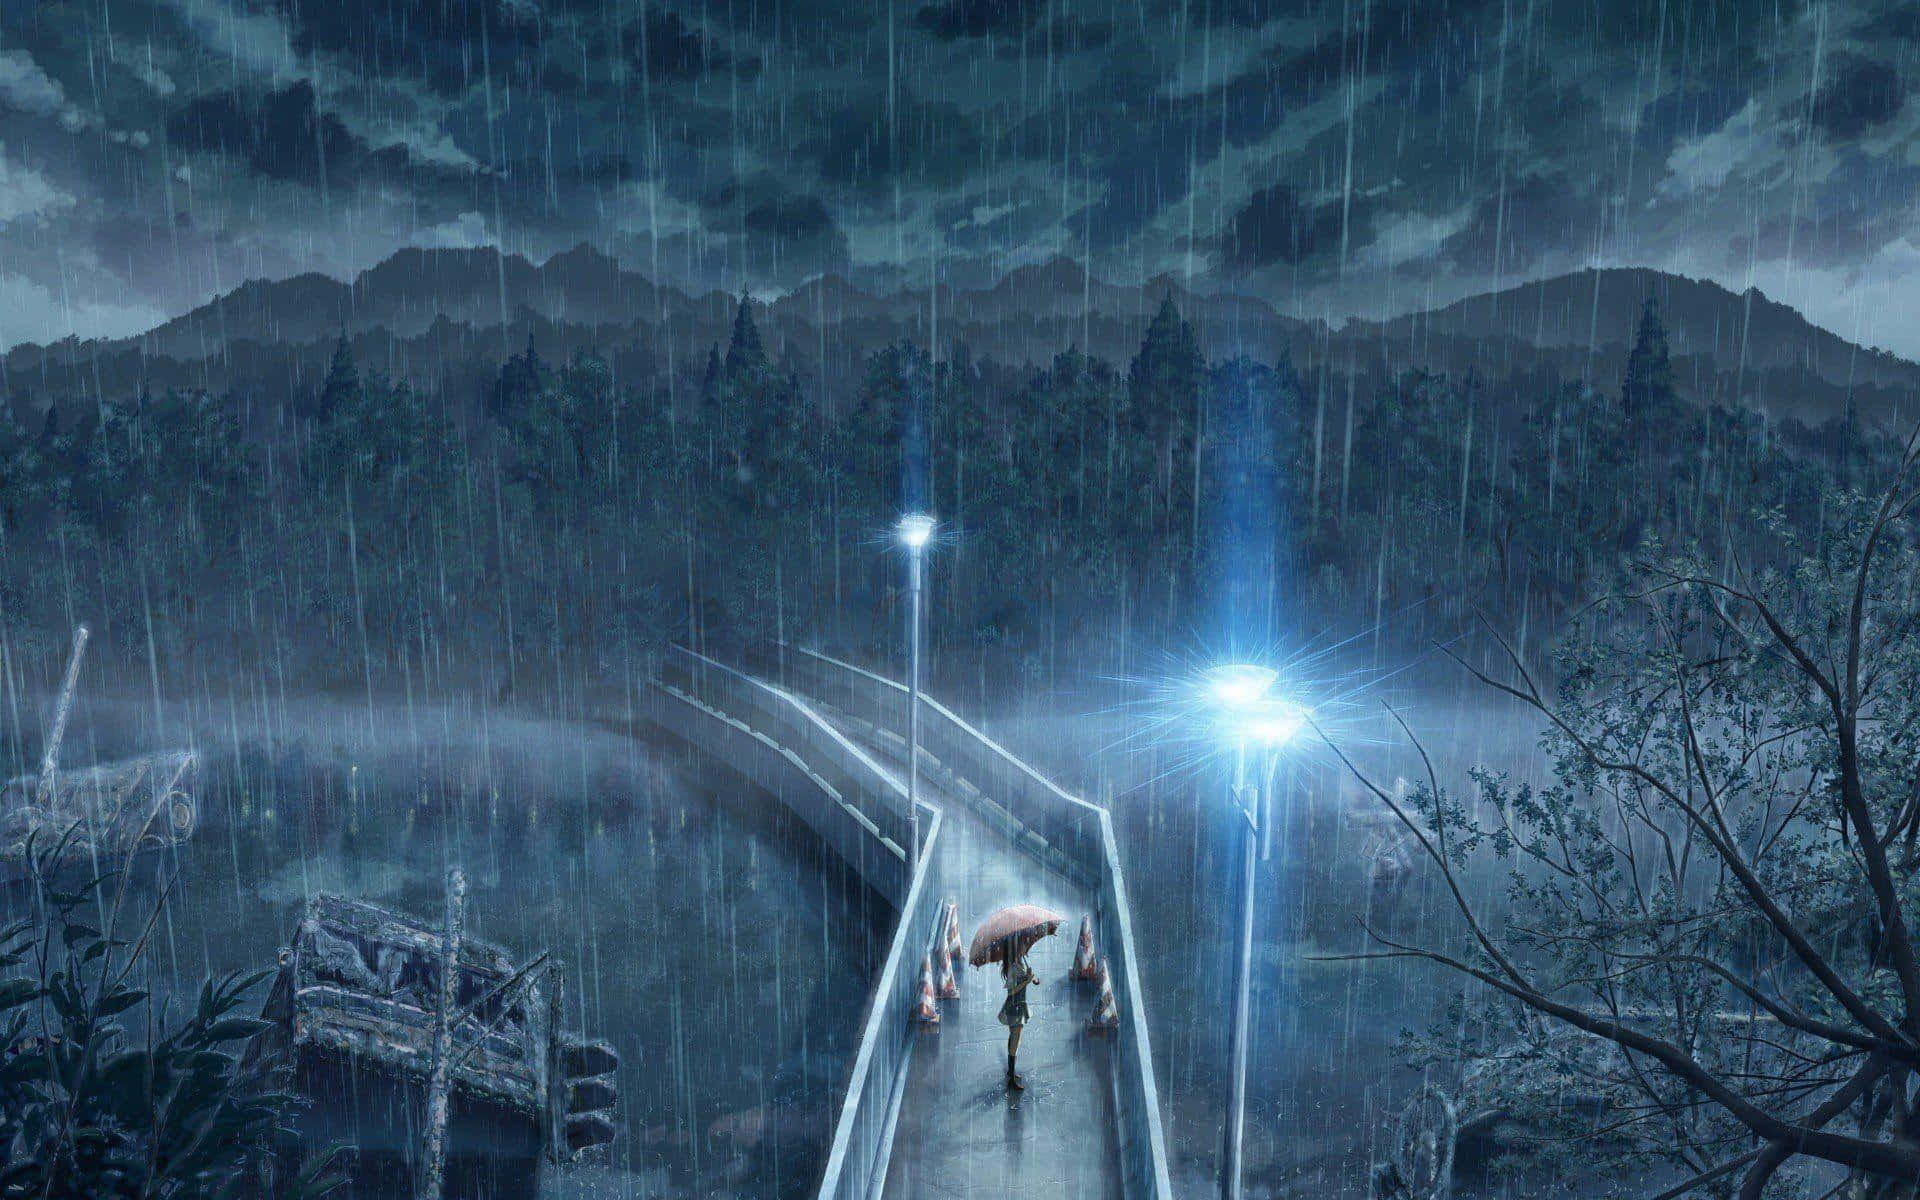 Animekunst Af Broen På En Regnfuld Dag Billede.